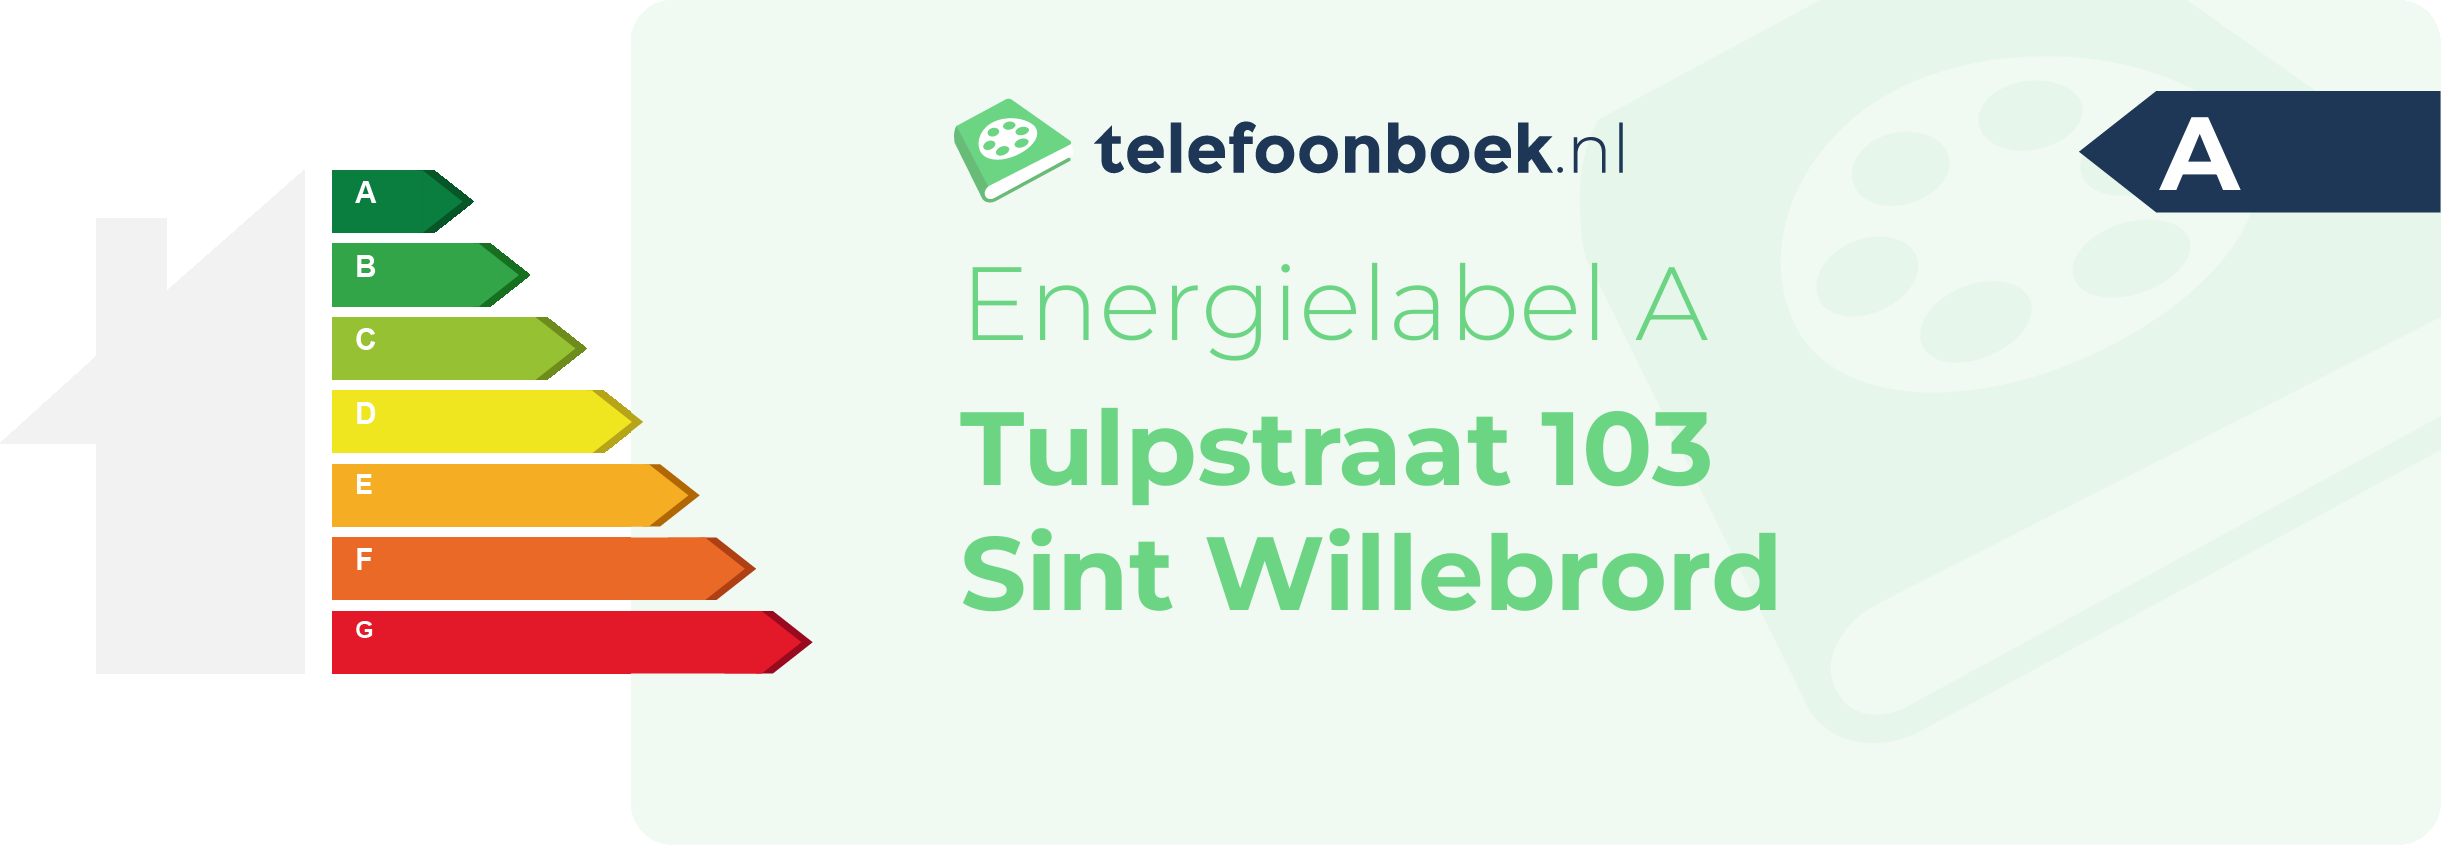 Energielabel Tulpstraat 103 Sint Willebrord